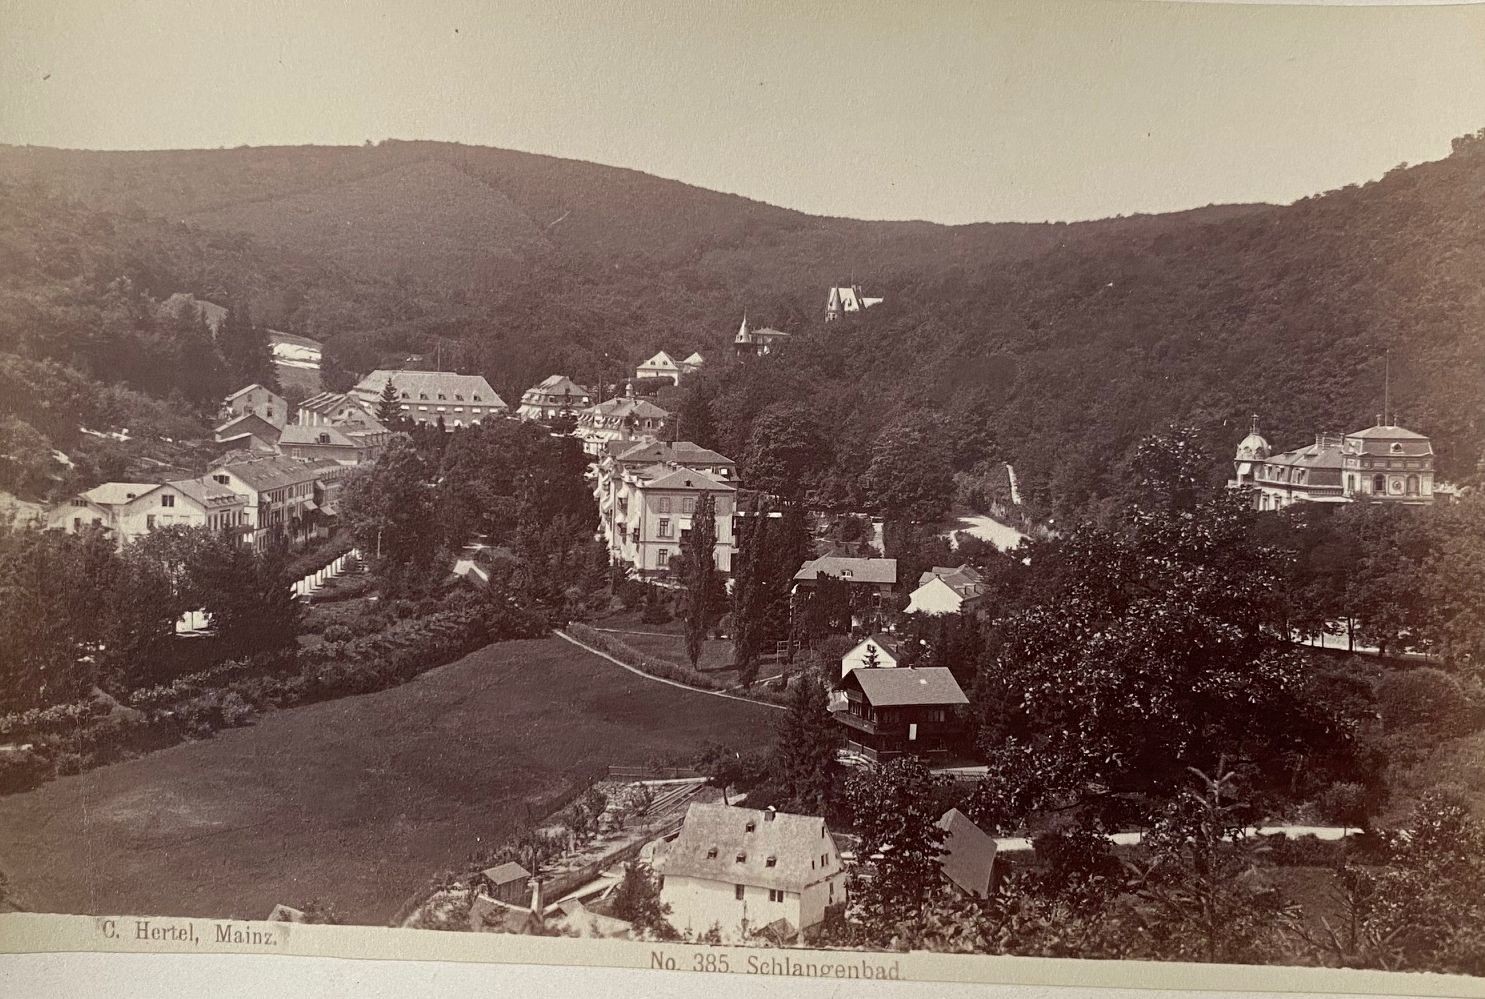 Fotografie, Carl Hertel No. 385, Schlangenbad, ca. 1885 (Taunus-Rhein-Main - Regionalgeschichtliche Sammlung Dr. Stefan Naas CC BY-NC-SA)